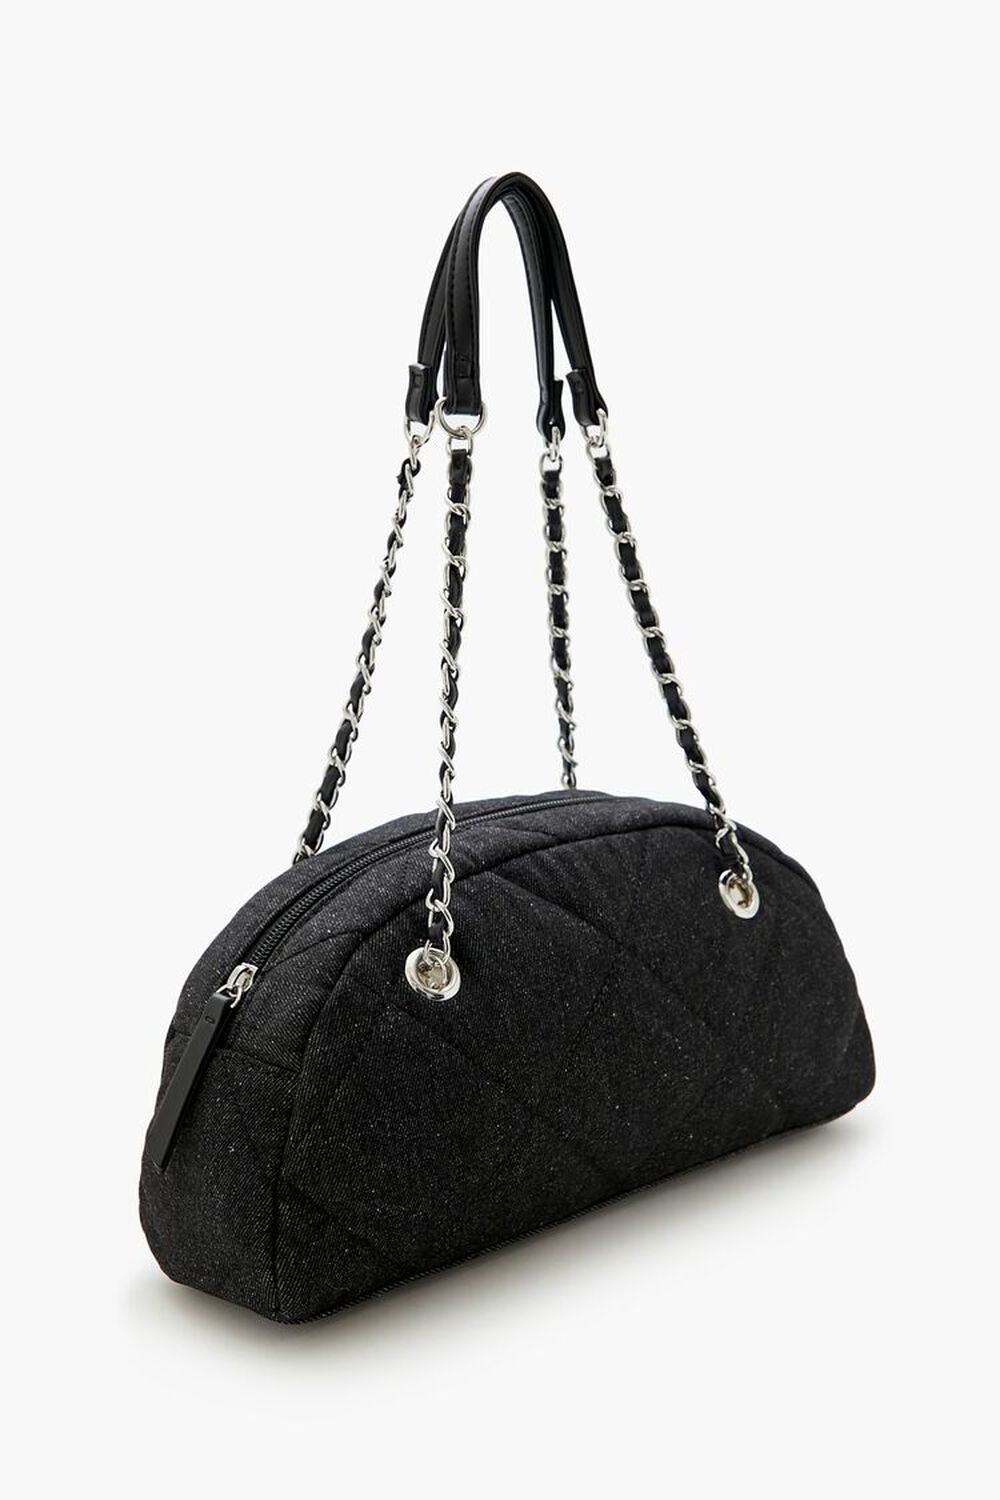 BLACK Quilted Denim Baguette Bag, image 2